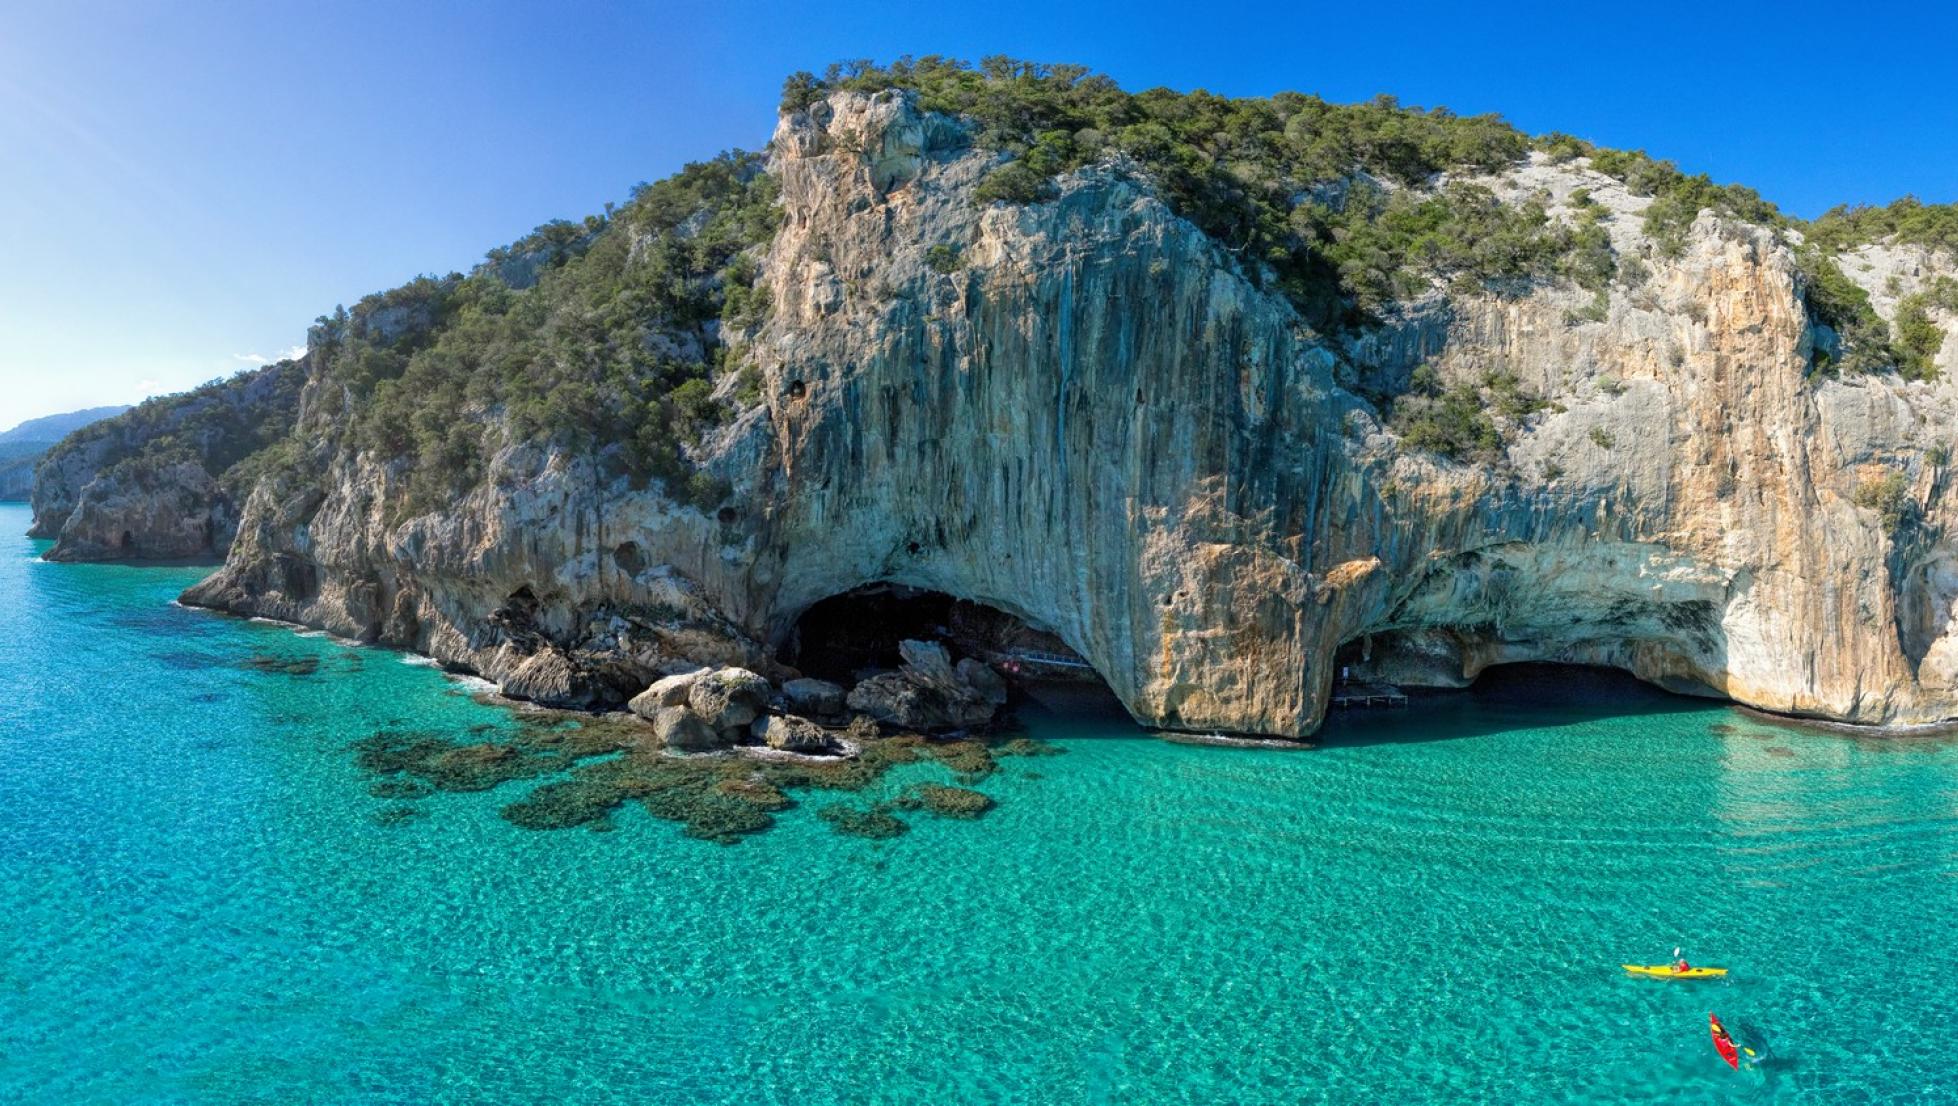 Grotte del bue marino - Cala Gonone - Dorgali